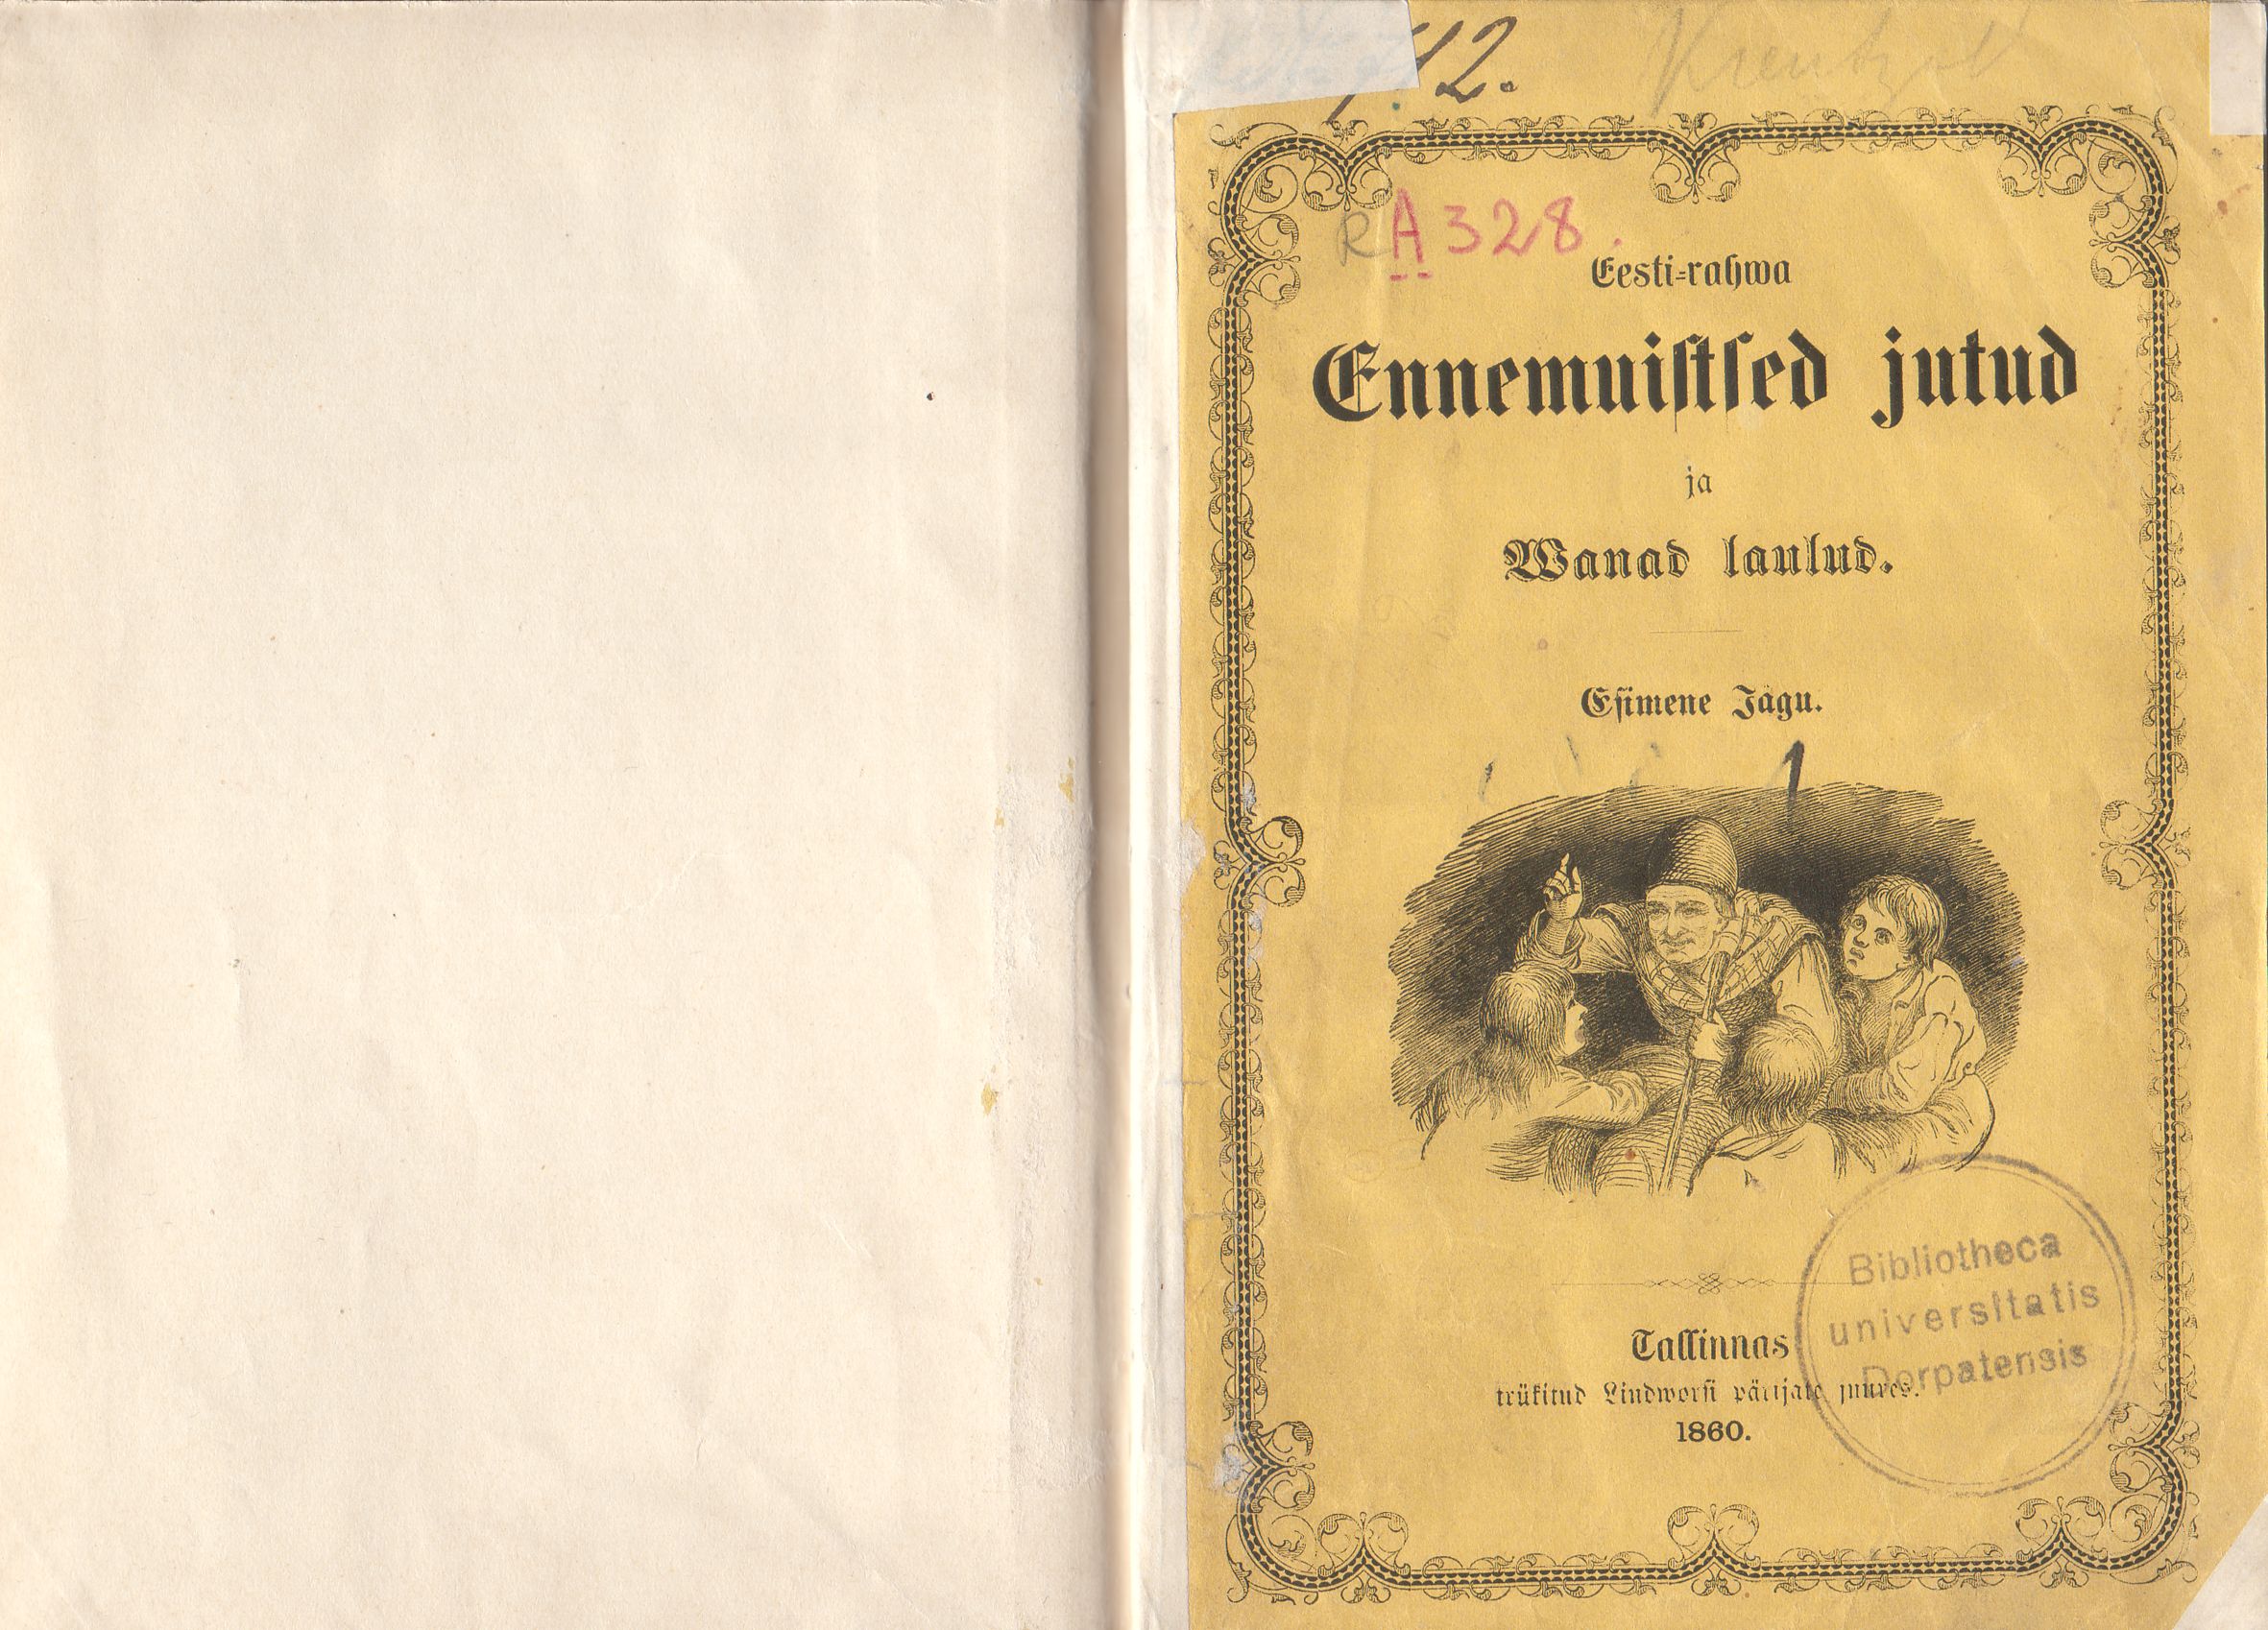 Eesti rahva ennemuistsed jutud ja vanad laulud (1860) | 2. Передняя обложка